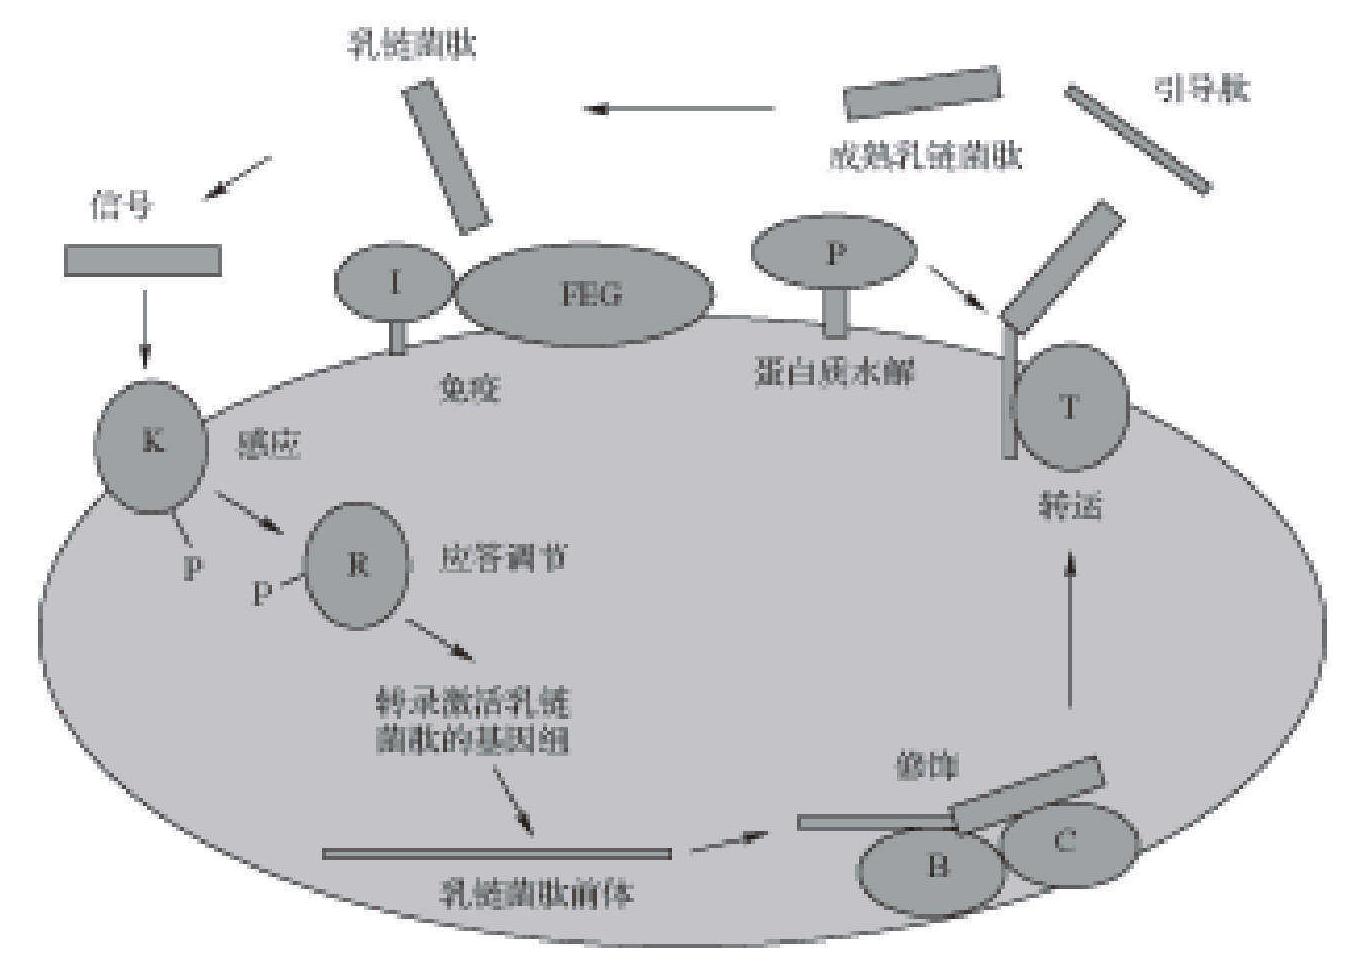 乳酸链球菌素生物合成基因簇及其生物合成的调控